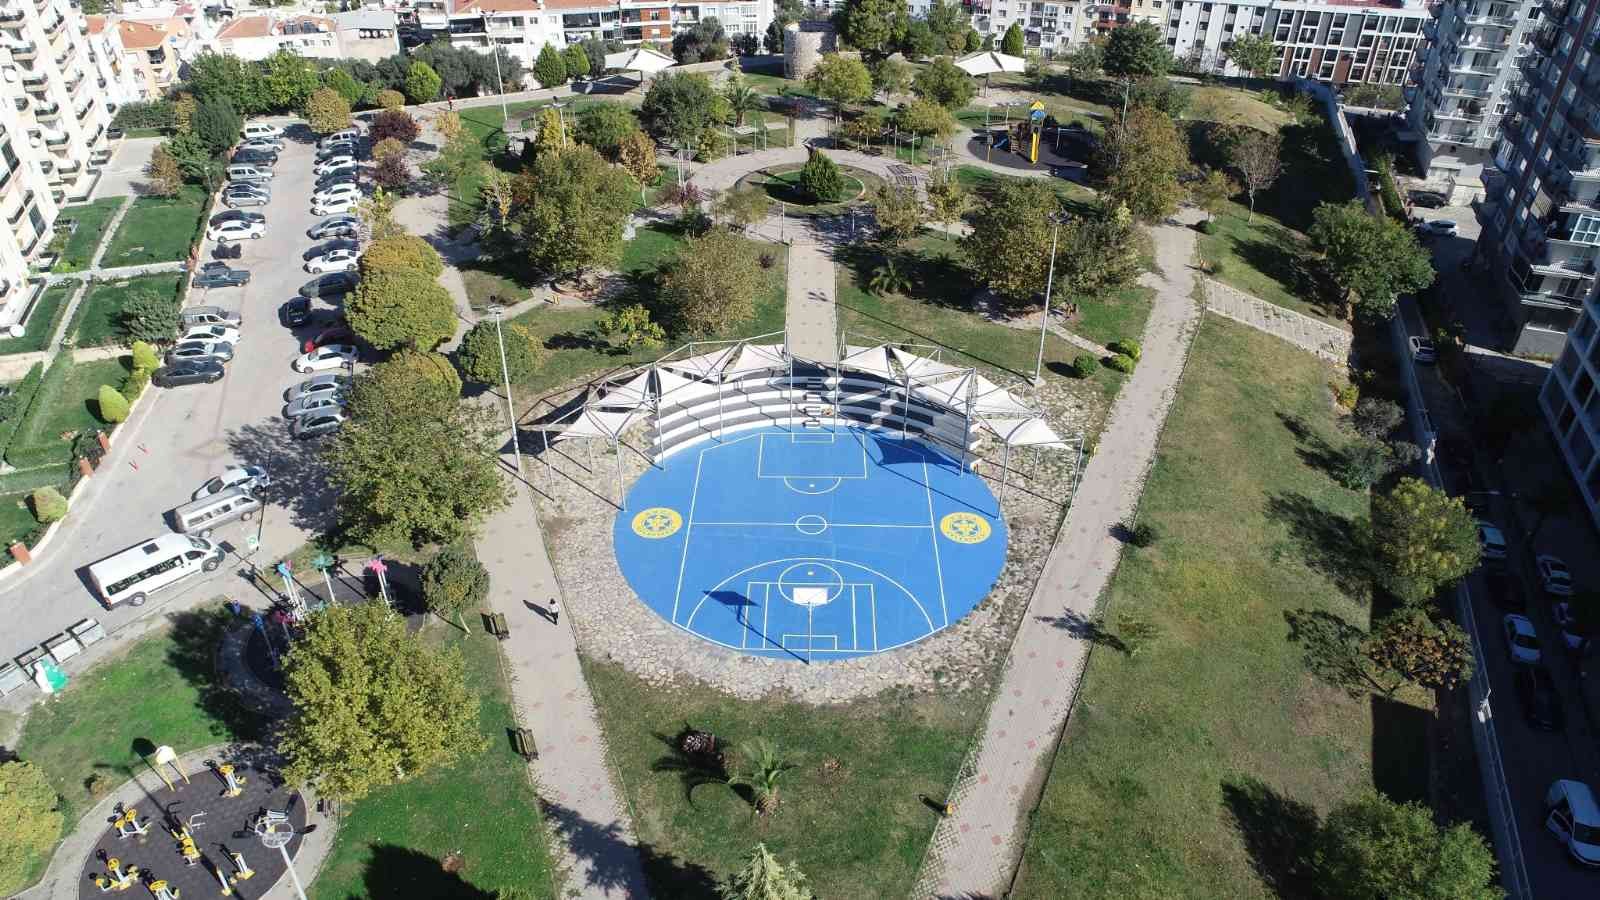 Buca’nın basketbol sahalarına yeni yüz #izmir